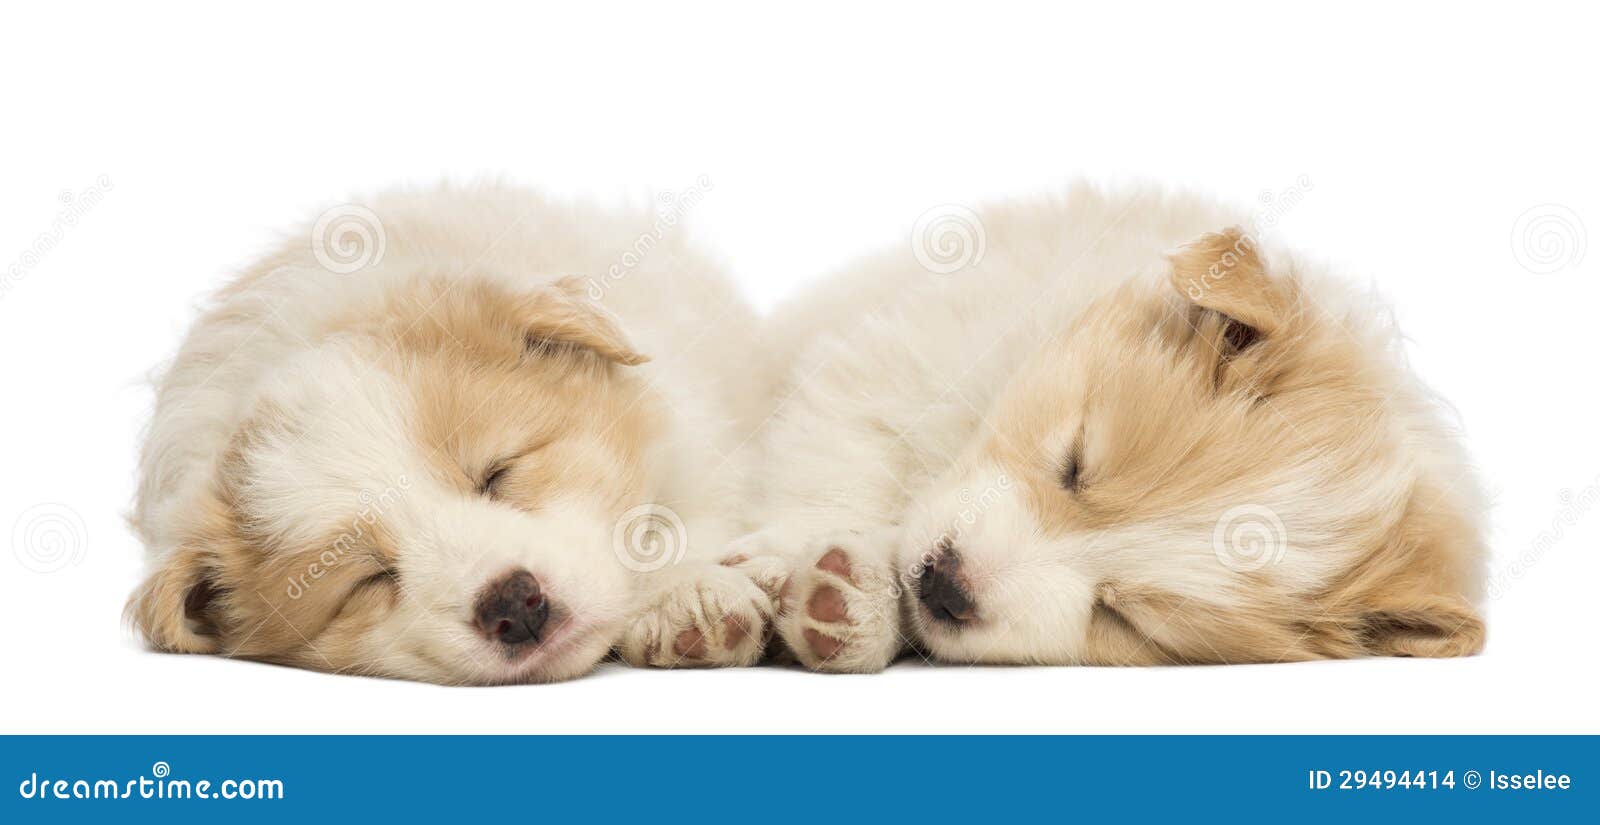 how much sleep do 6 week old puppies need